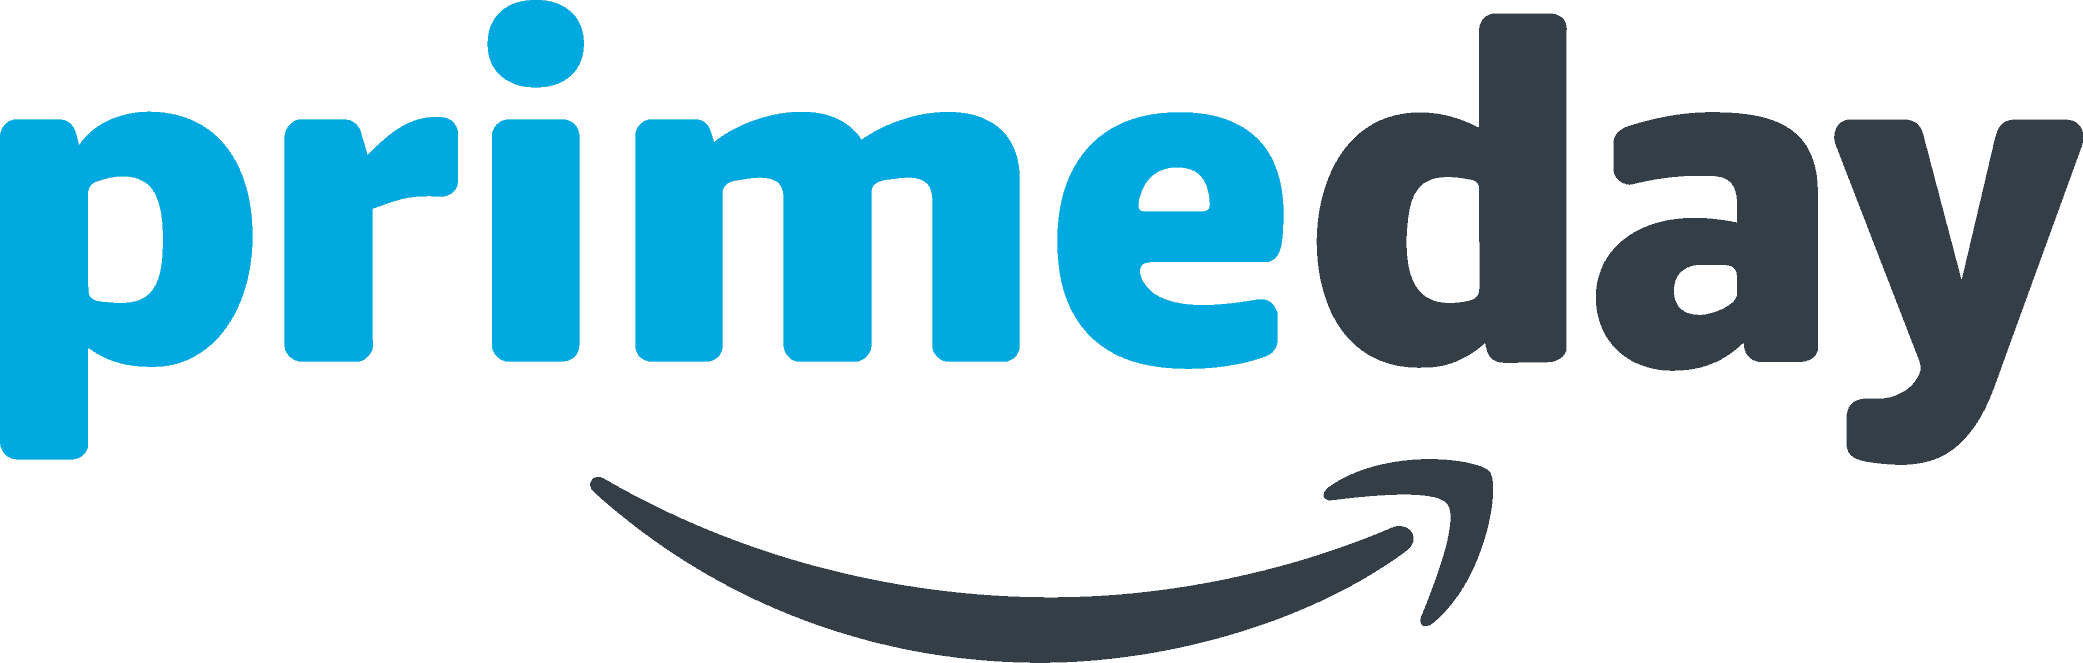 Amazon Prime Day 2 logo